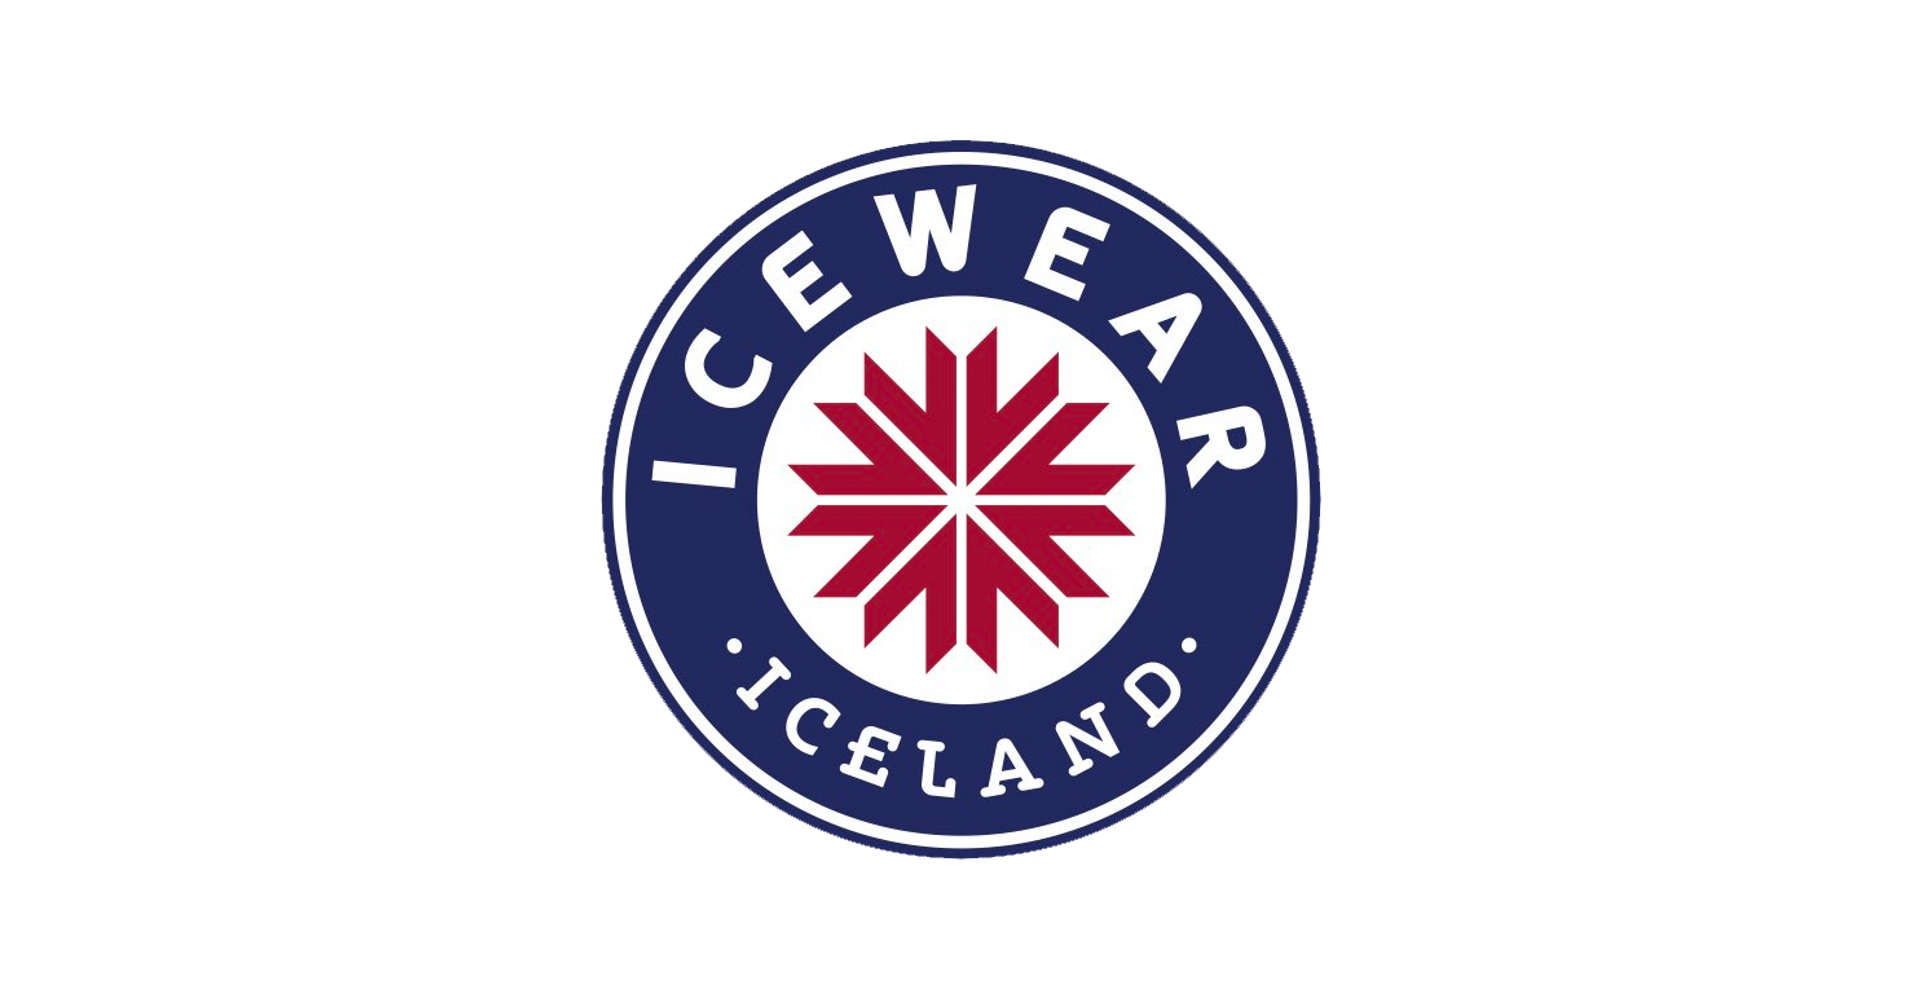 icewear logo iceland high quality wool clothing